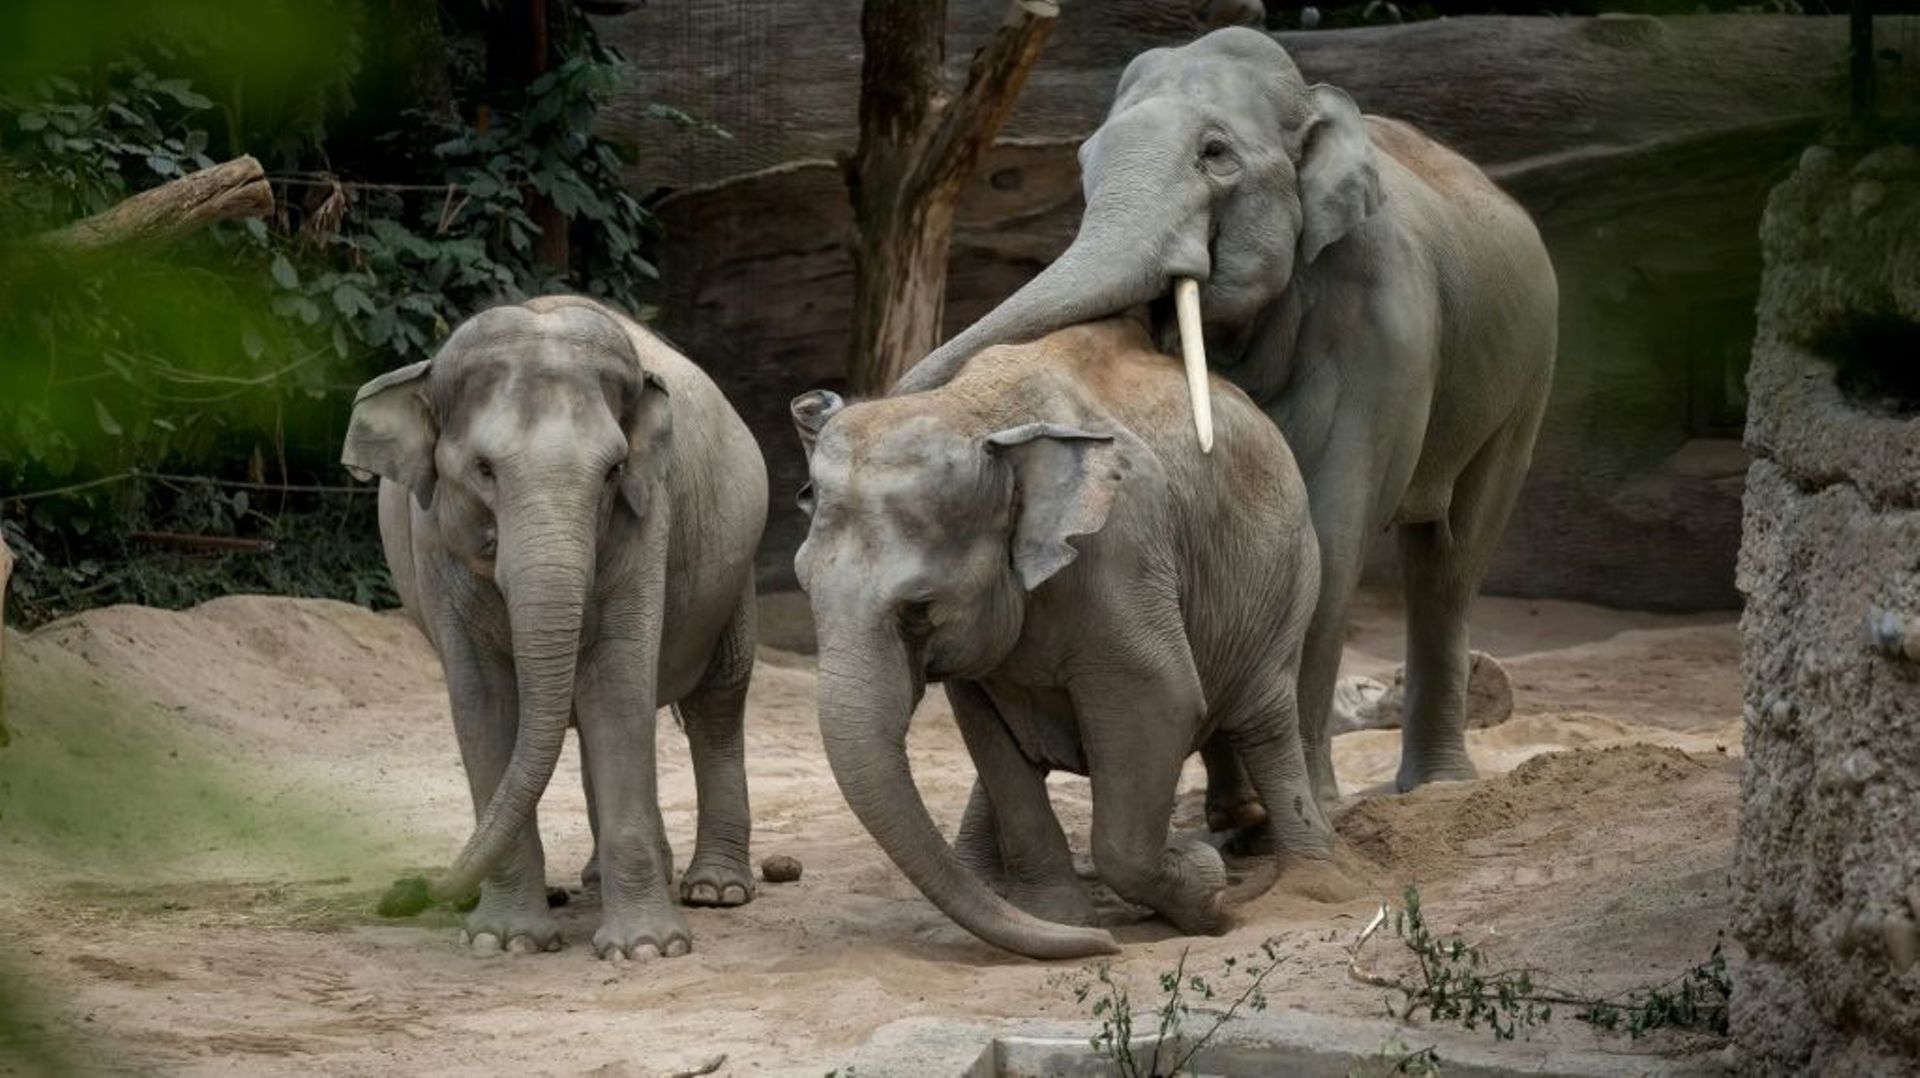 Des éléphants d'Asie dans leur enclos du zoo de Zurich, le 27 juillet 2022 en Suisse